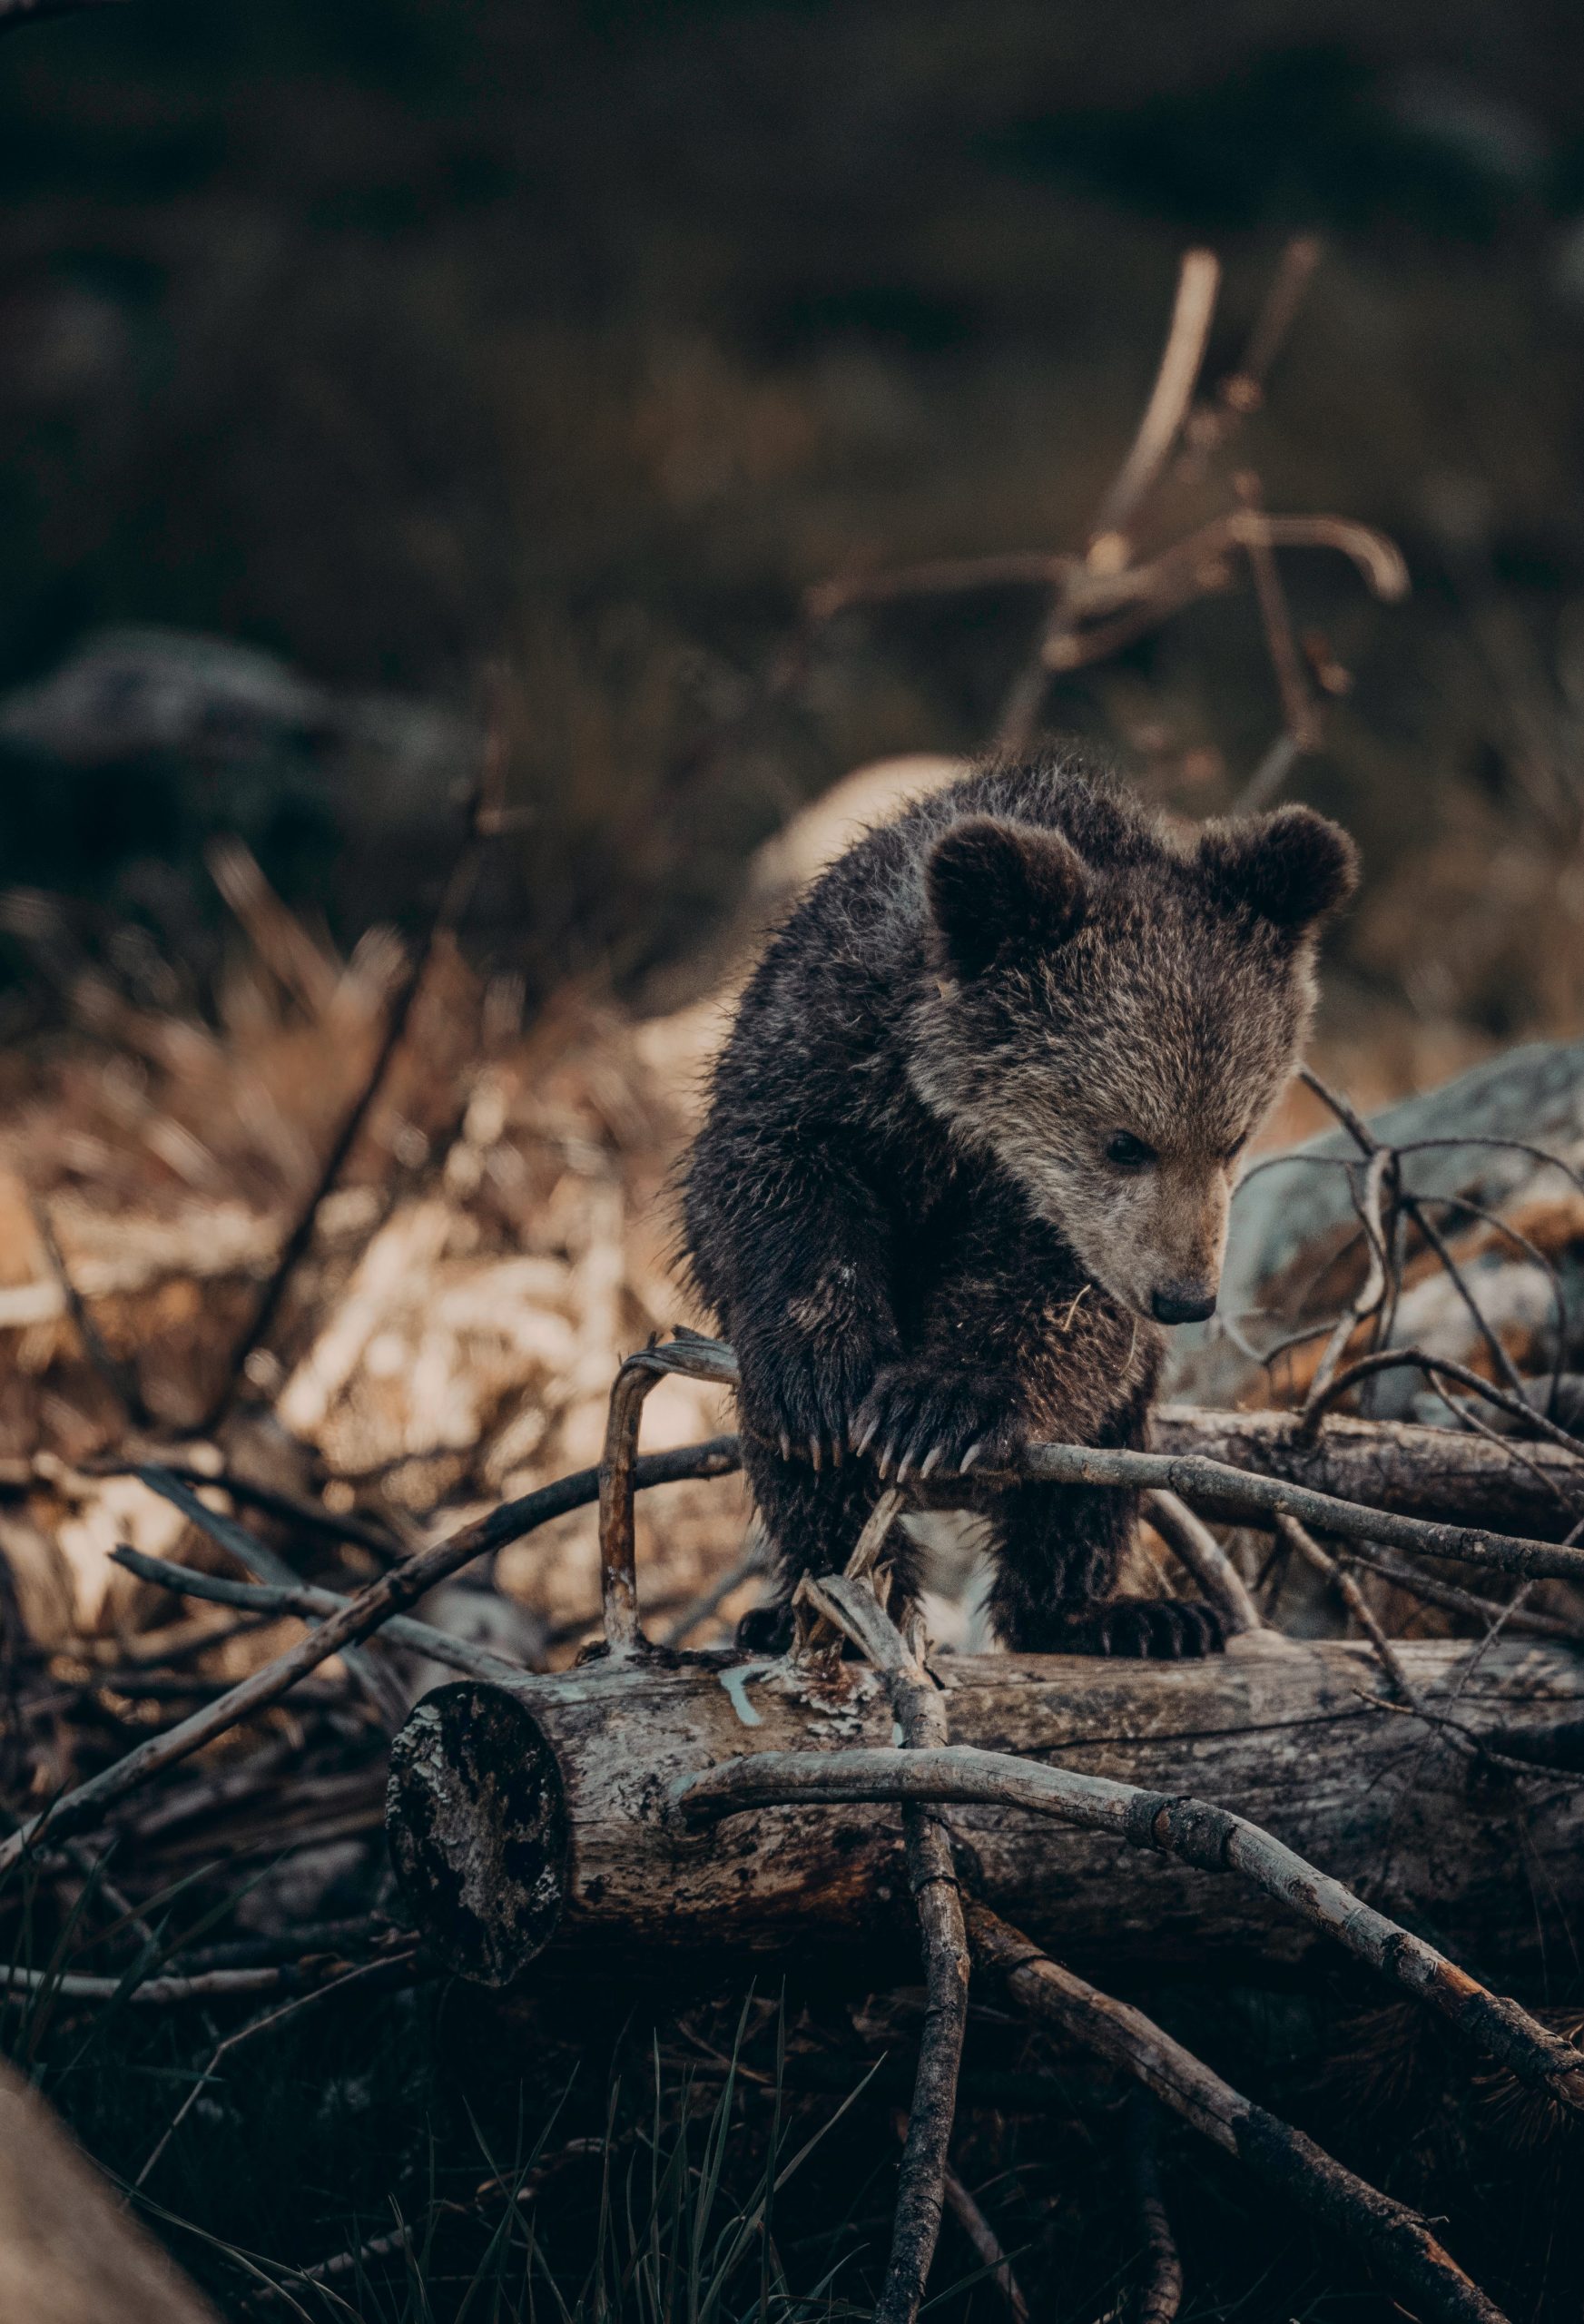 Baligród: leśniczy nagrał niedźwiedzia na parkingu